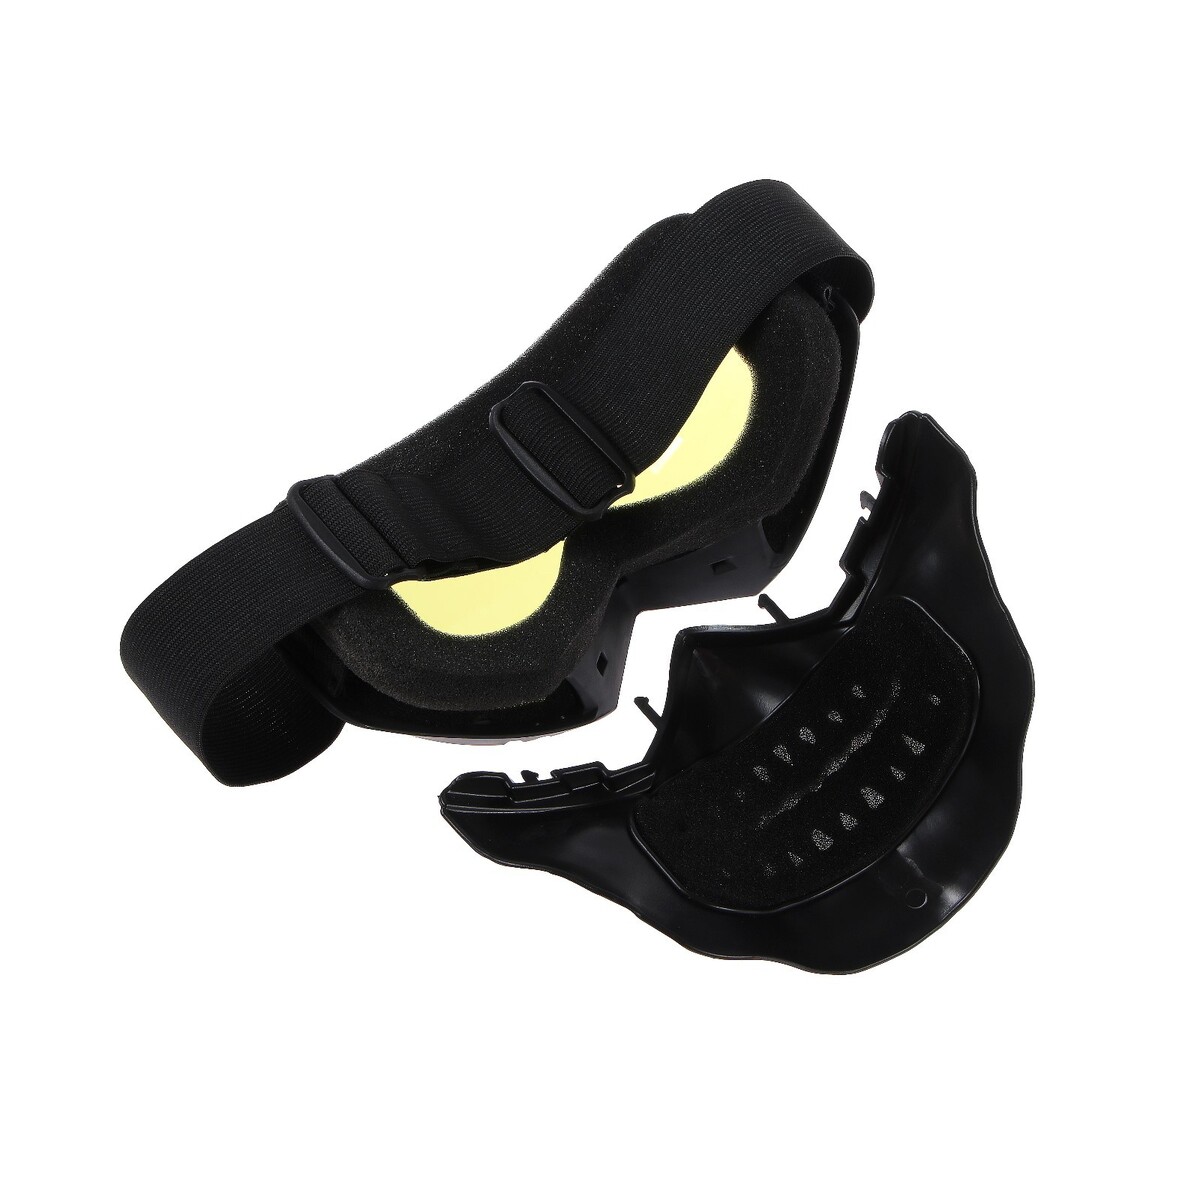 фото Очки-маска для езды на мототехнике, разборные, визор желтый, цвет черный torso